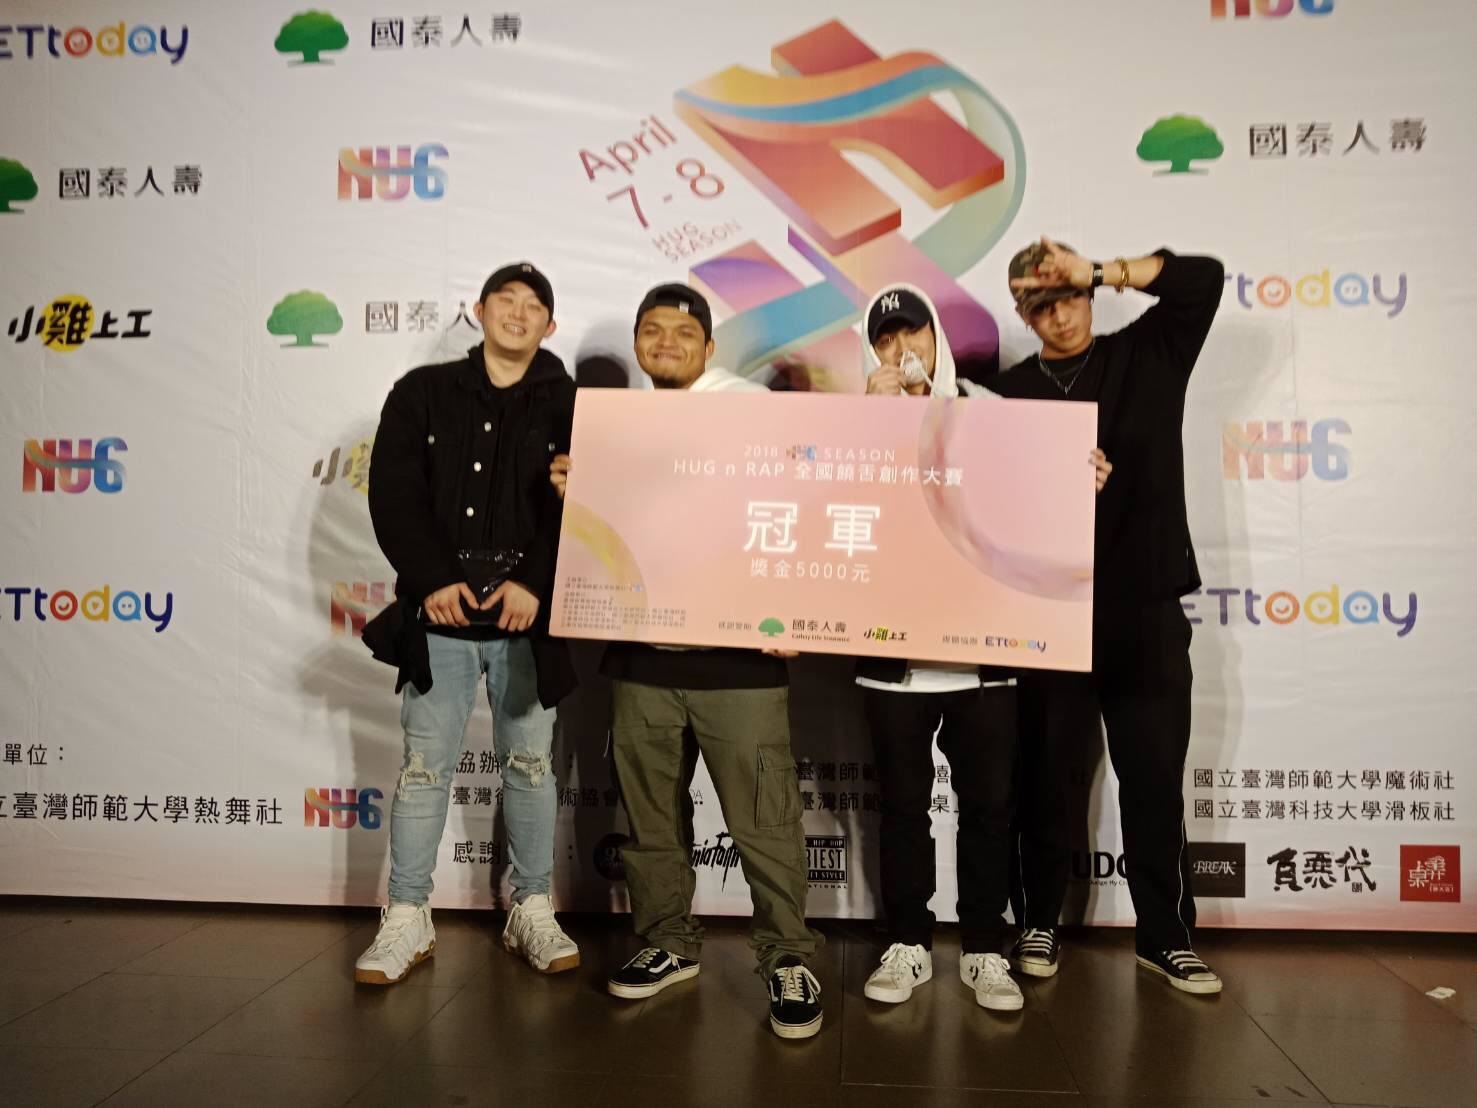 來自馬來西亞、目前就讀聖約翰科技大學的李謙堯 (Yung A.K.，左一)，與廖冠能（Black Mic，左二）、方御先（GameBOY，右二）及翟飛（FEiZi，右一）等4人第一次參加音樂創作比賽，即一鳴驚人勇奪「2018 HUG n RAP全國饒舌創作大賽」冠軍